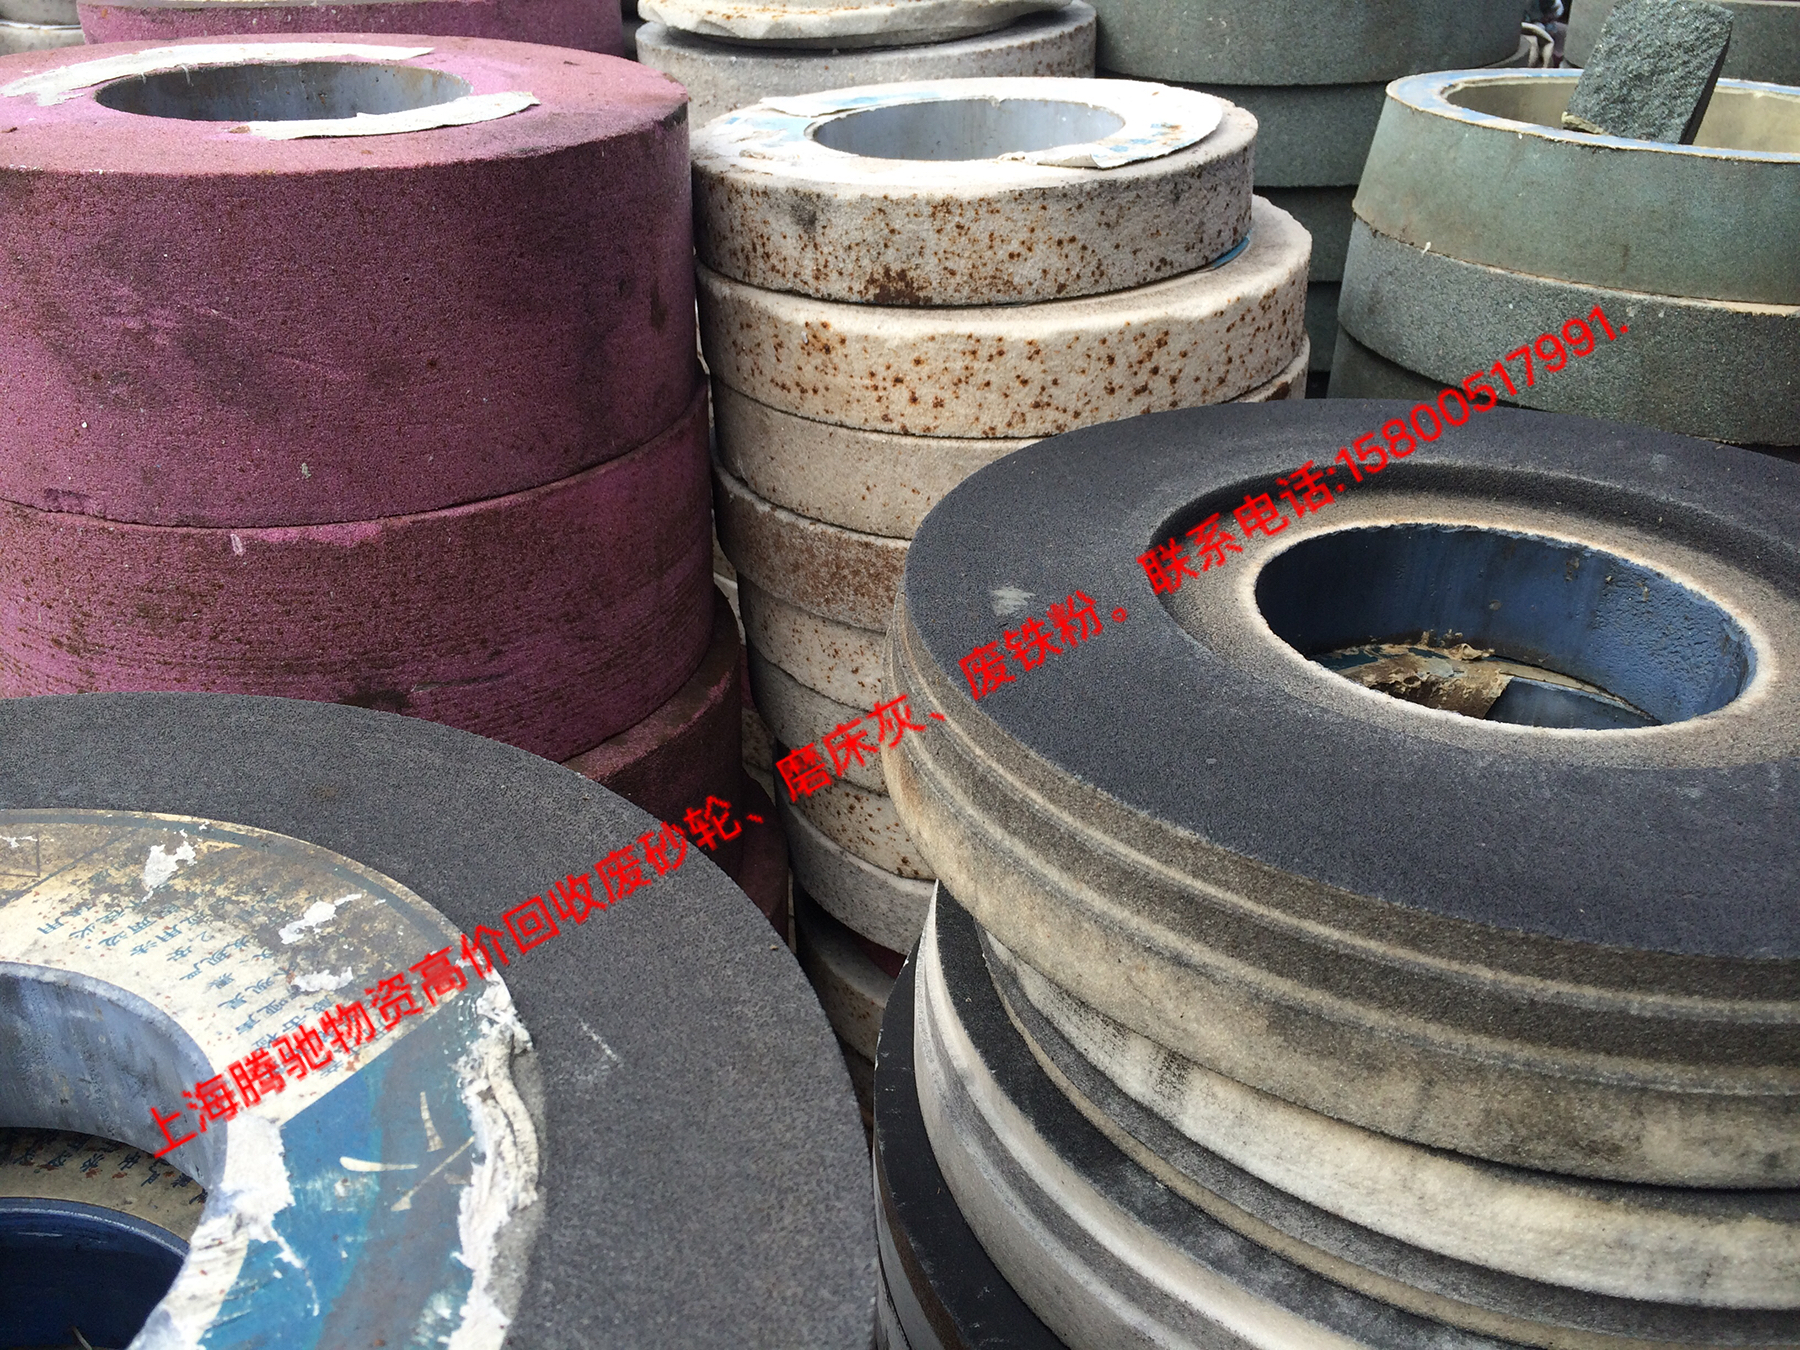 供应废旧砂轮，上海废砂轮回收，白刚玉回收价格，磨具厂废砂轮回收，机械厂磨床砂轮回收，工具厂磨床砂轮回收，废砂轮回收价格，图片